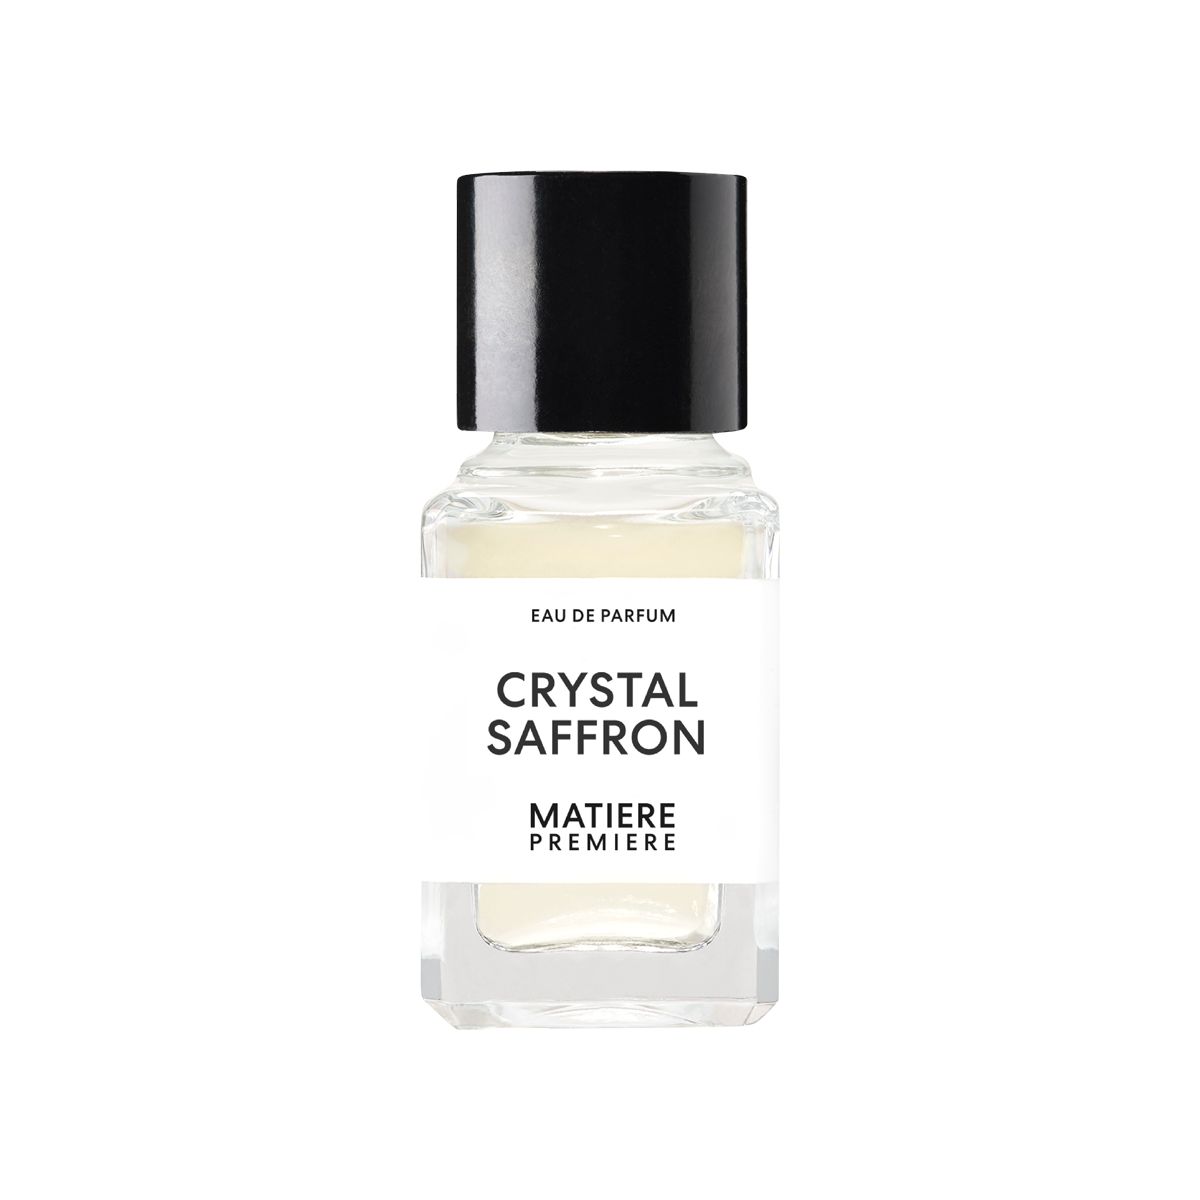 Matiere Premiere - Crystal Saffron Eau de Parfum